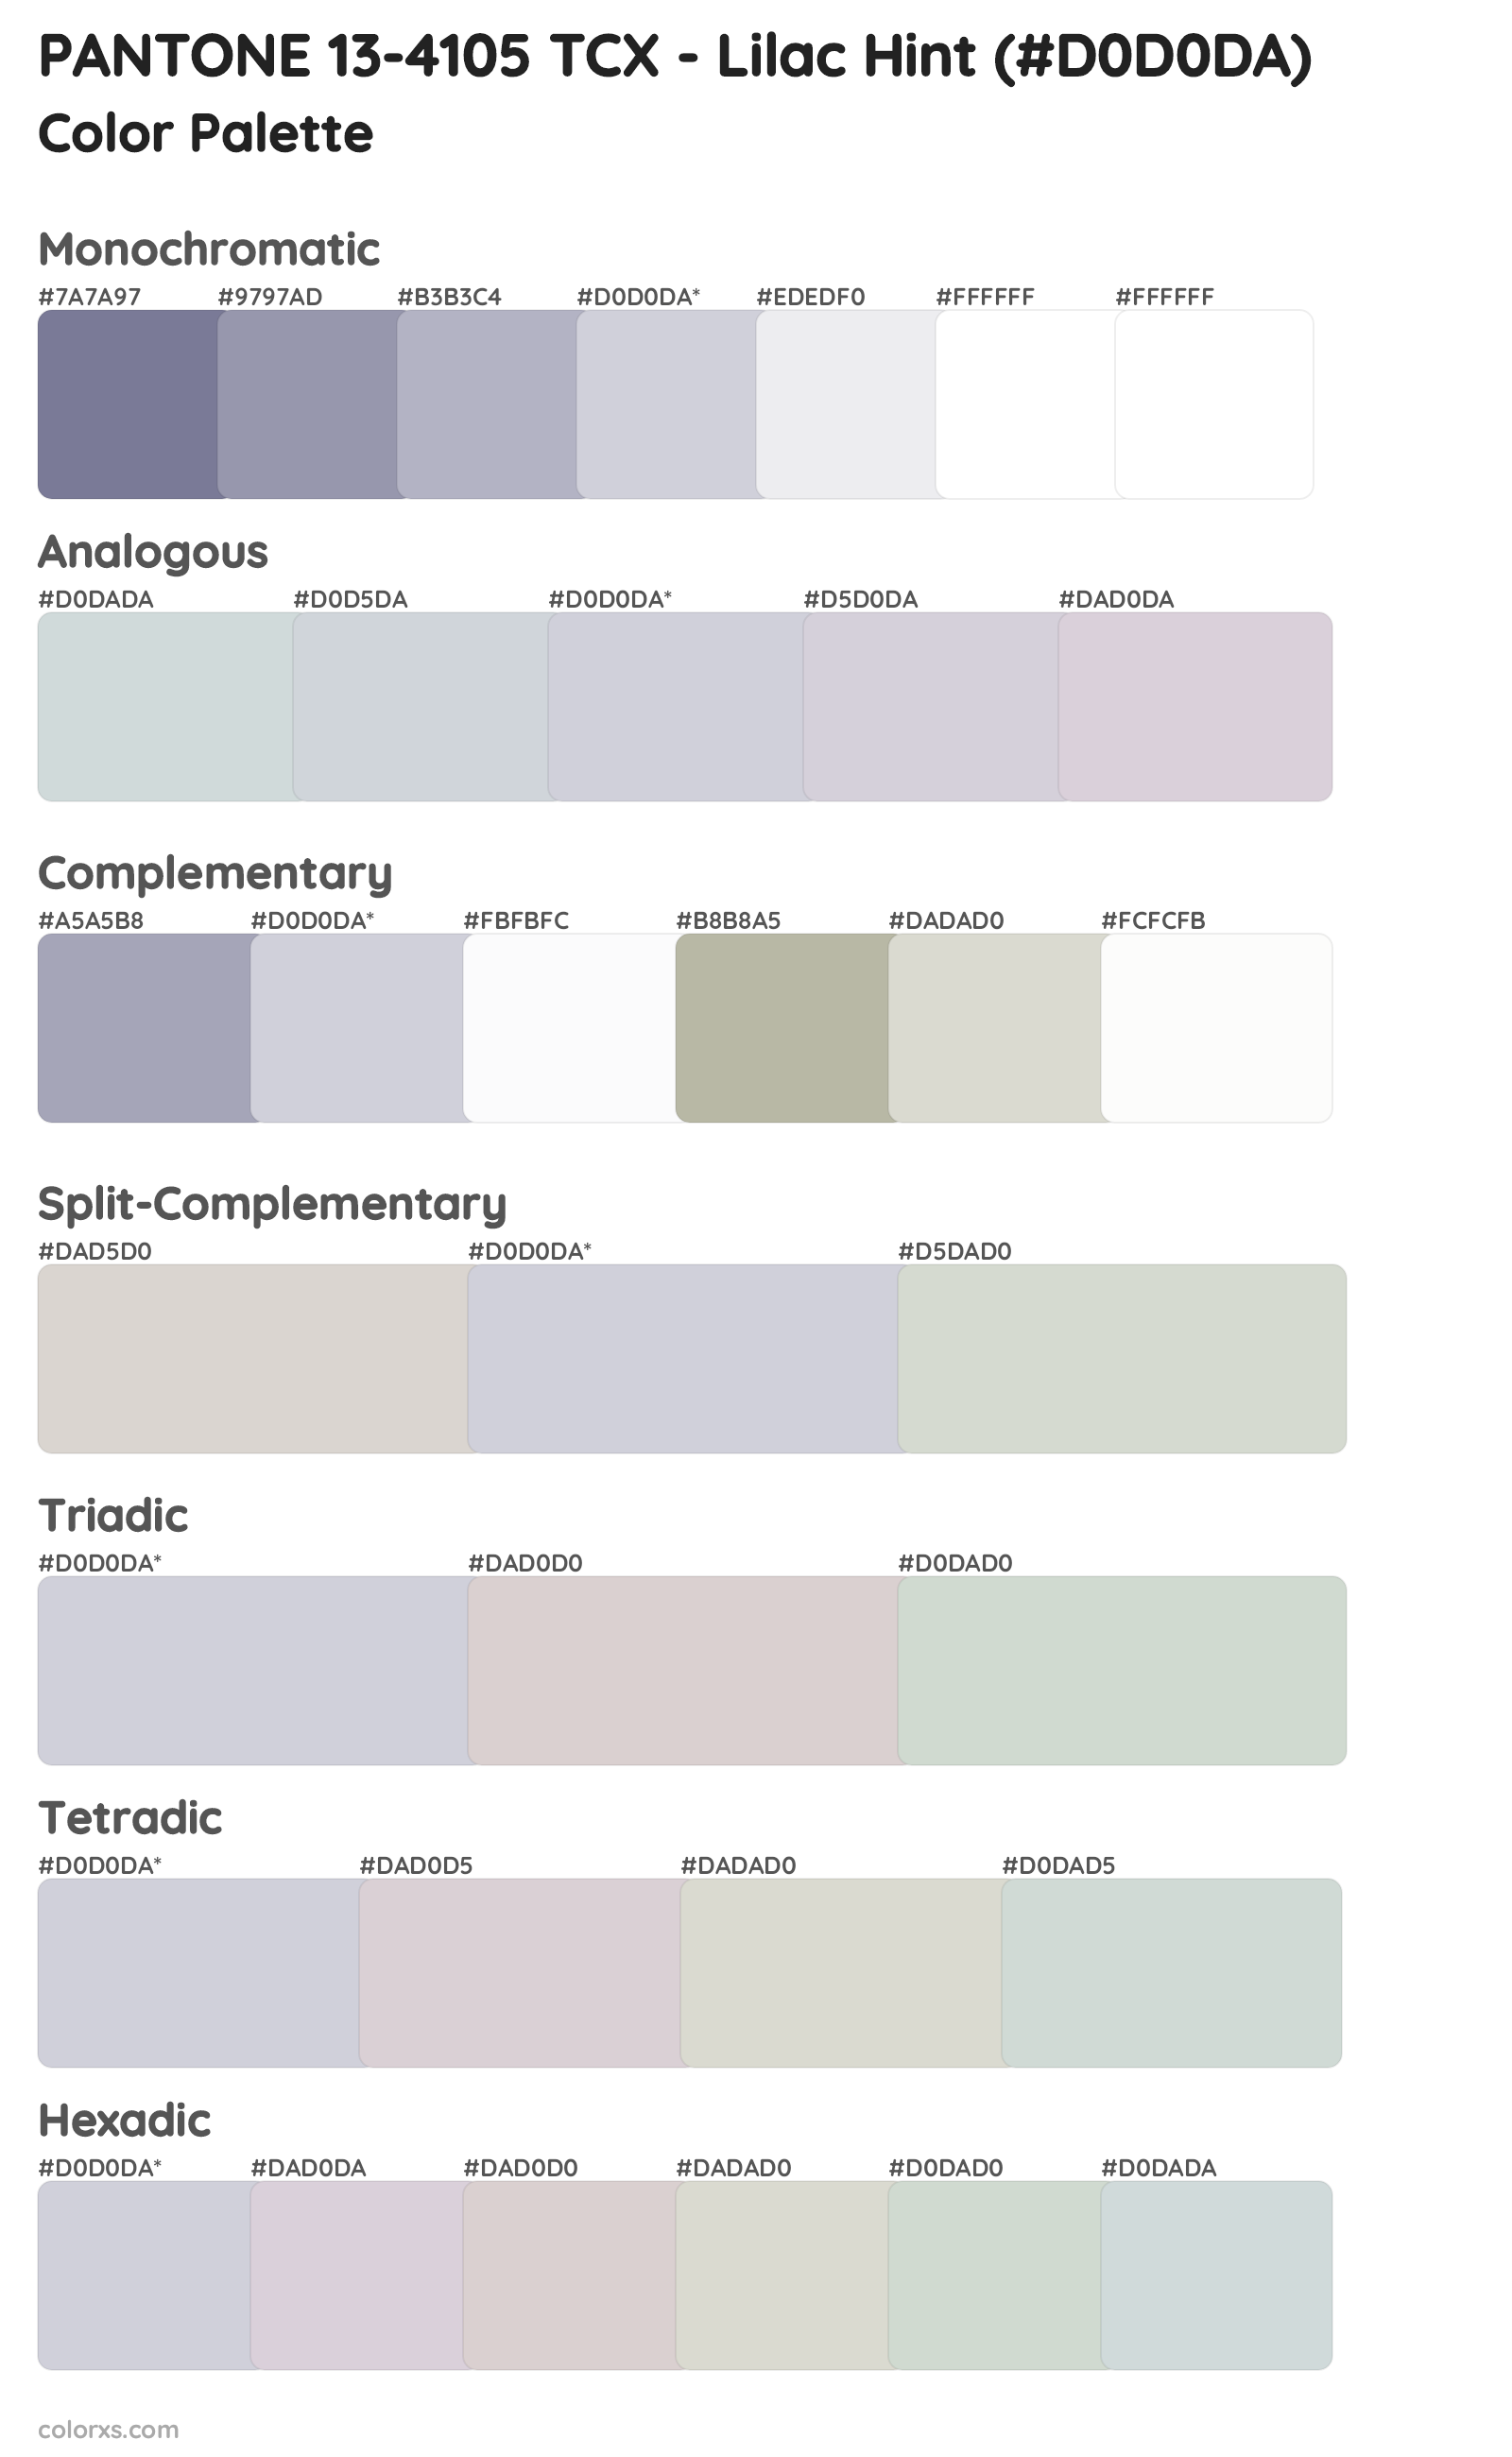 PANTONE 13-4105 TCX - Lilac Hint Color Scheme Palettes